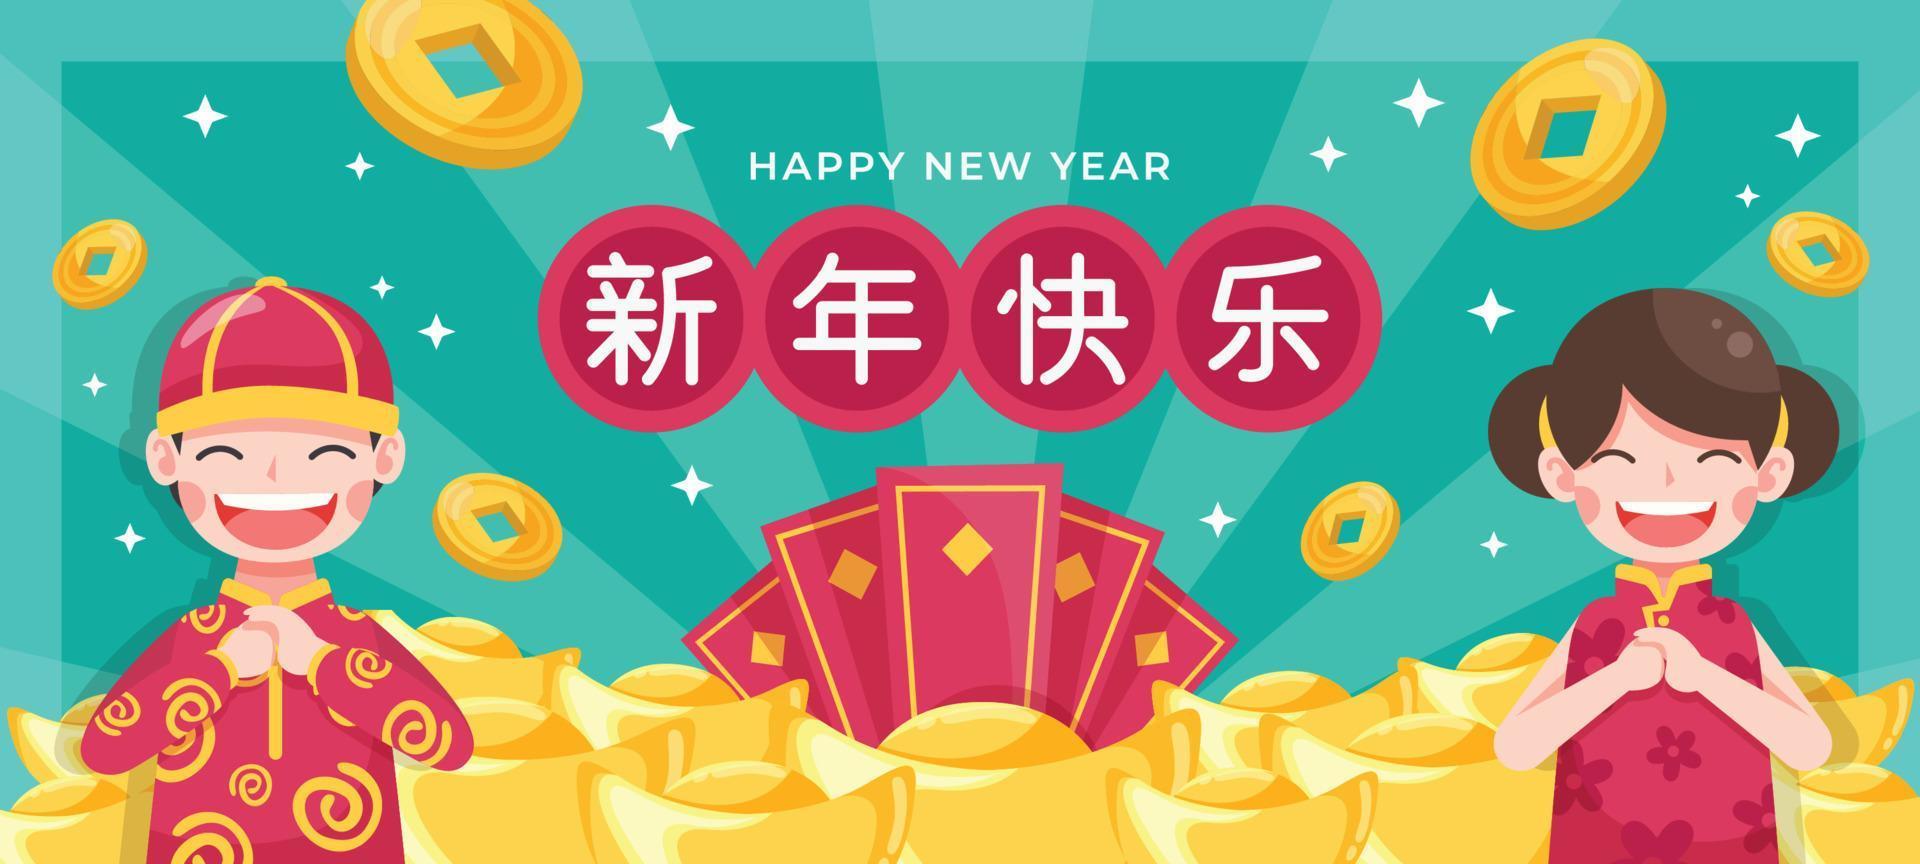 kinderen wensen gelukkig chinees nieuwjaar met vreugde en zijn omringd met goudstaaf vector